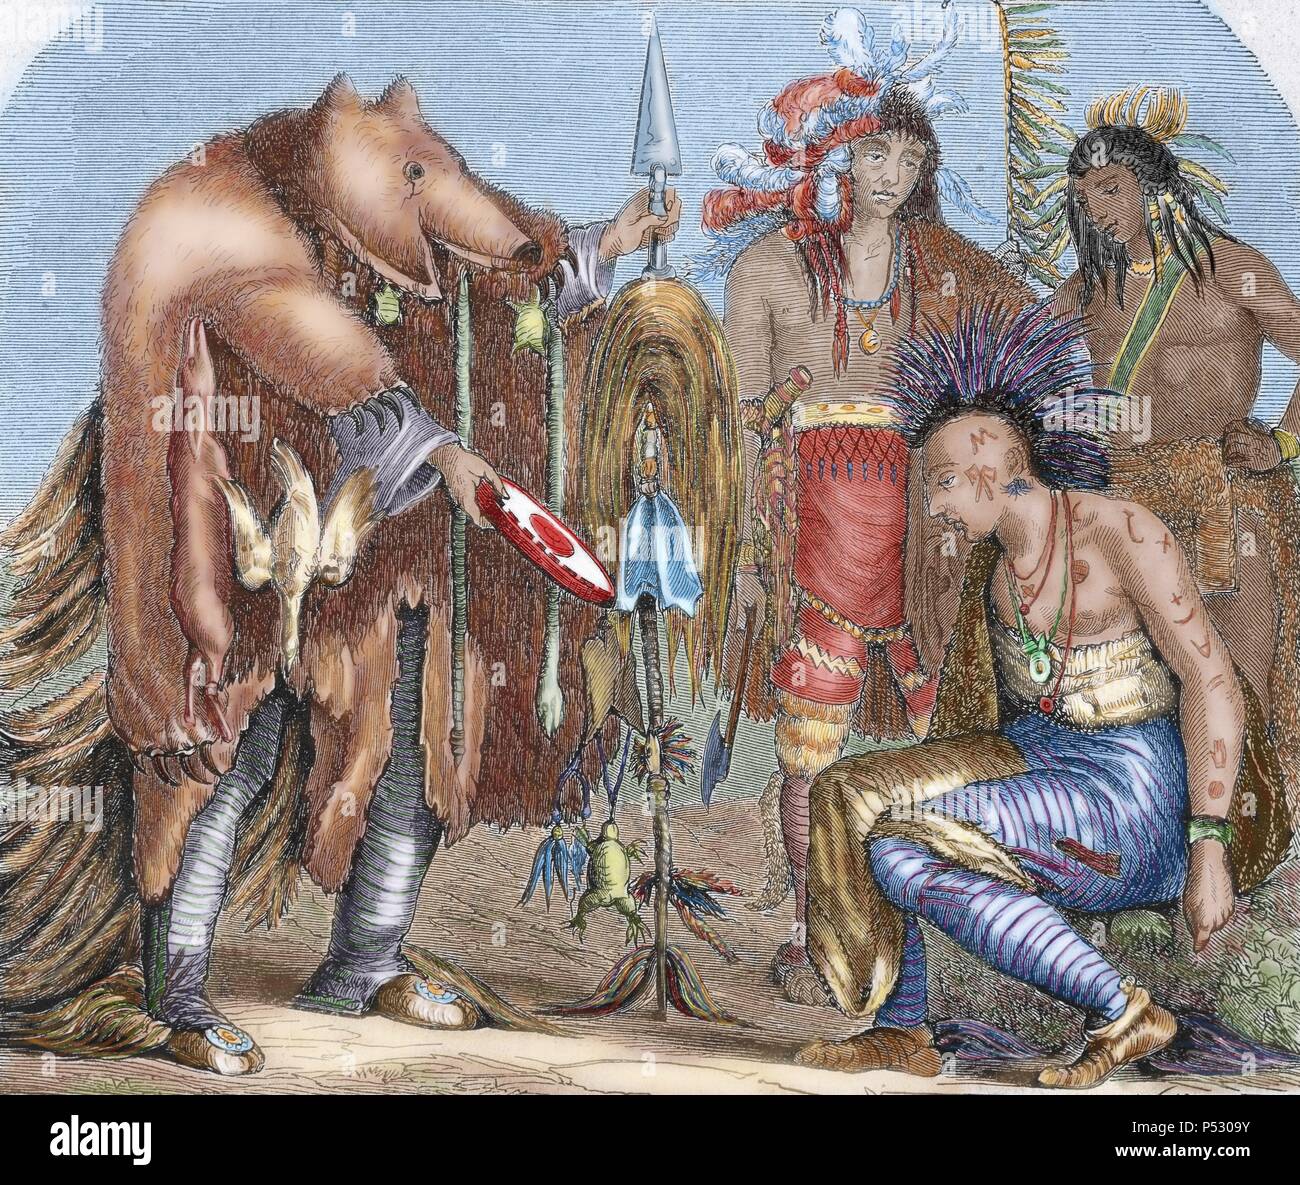 Stati Uniti. Gli indiani. Iroquois e Chippewa medici, i residenti del lago Superiore e del Lago Arkansas. Incisione colorata, 1878. Foto Stock